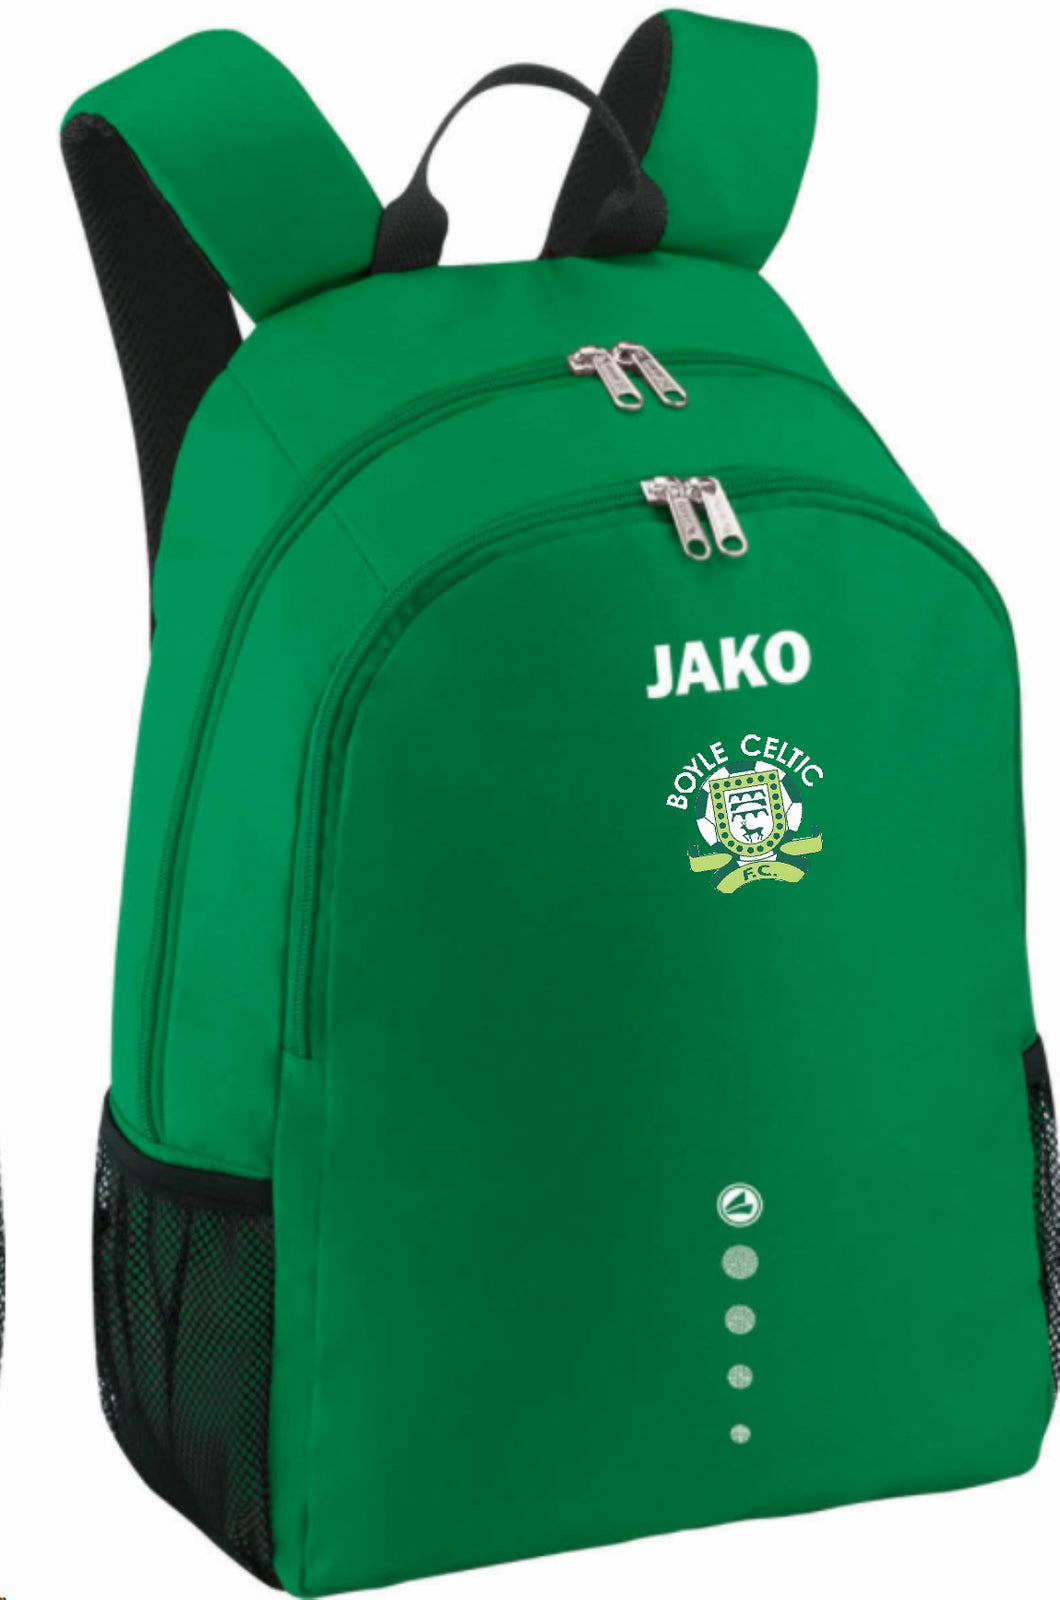 JAKO Boyle Celtic FC Backpack BOC1850